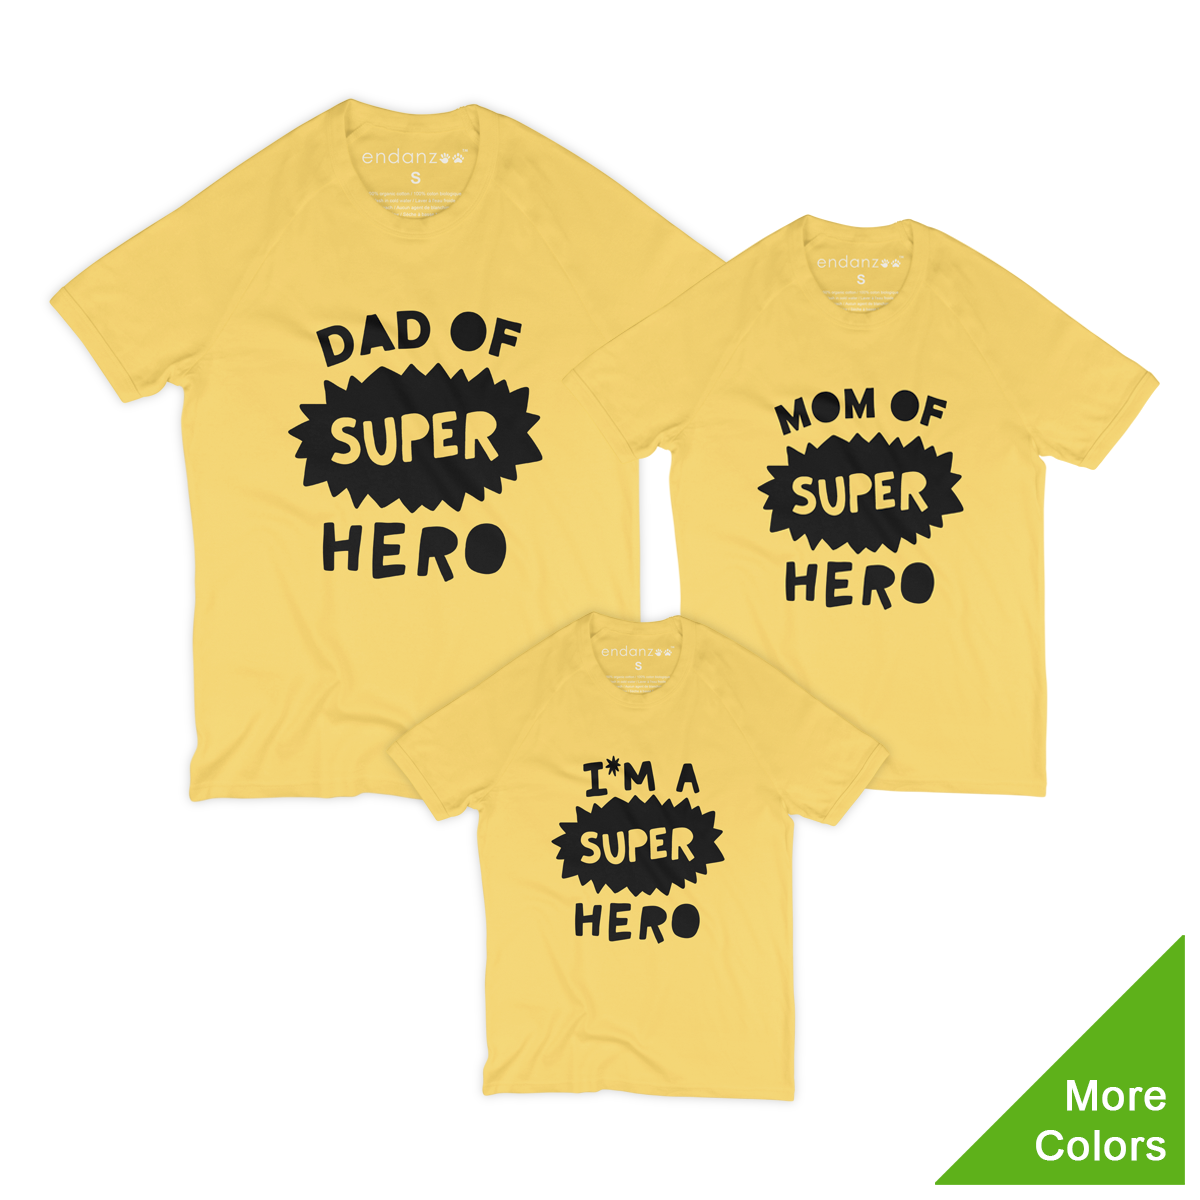 Matching Family Organic Tee Shirts - Super Hero Family (Yellow)